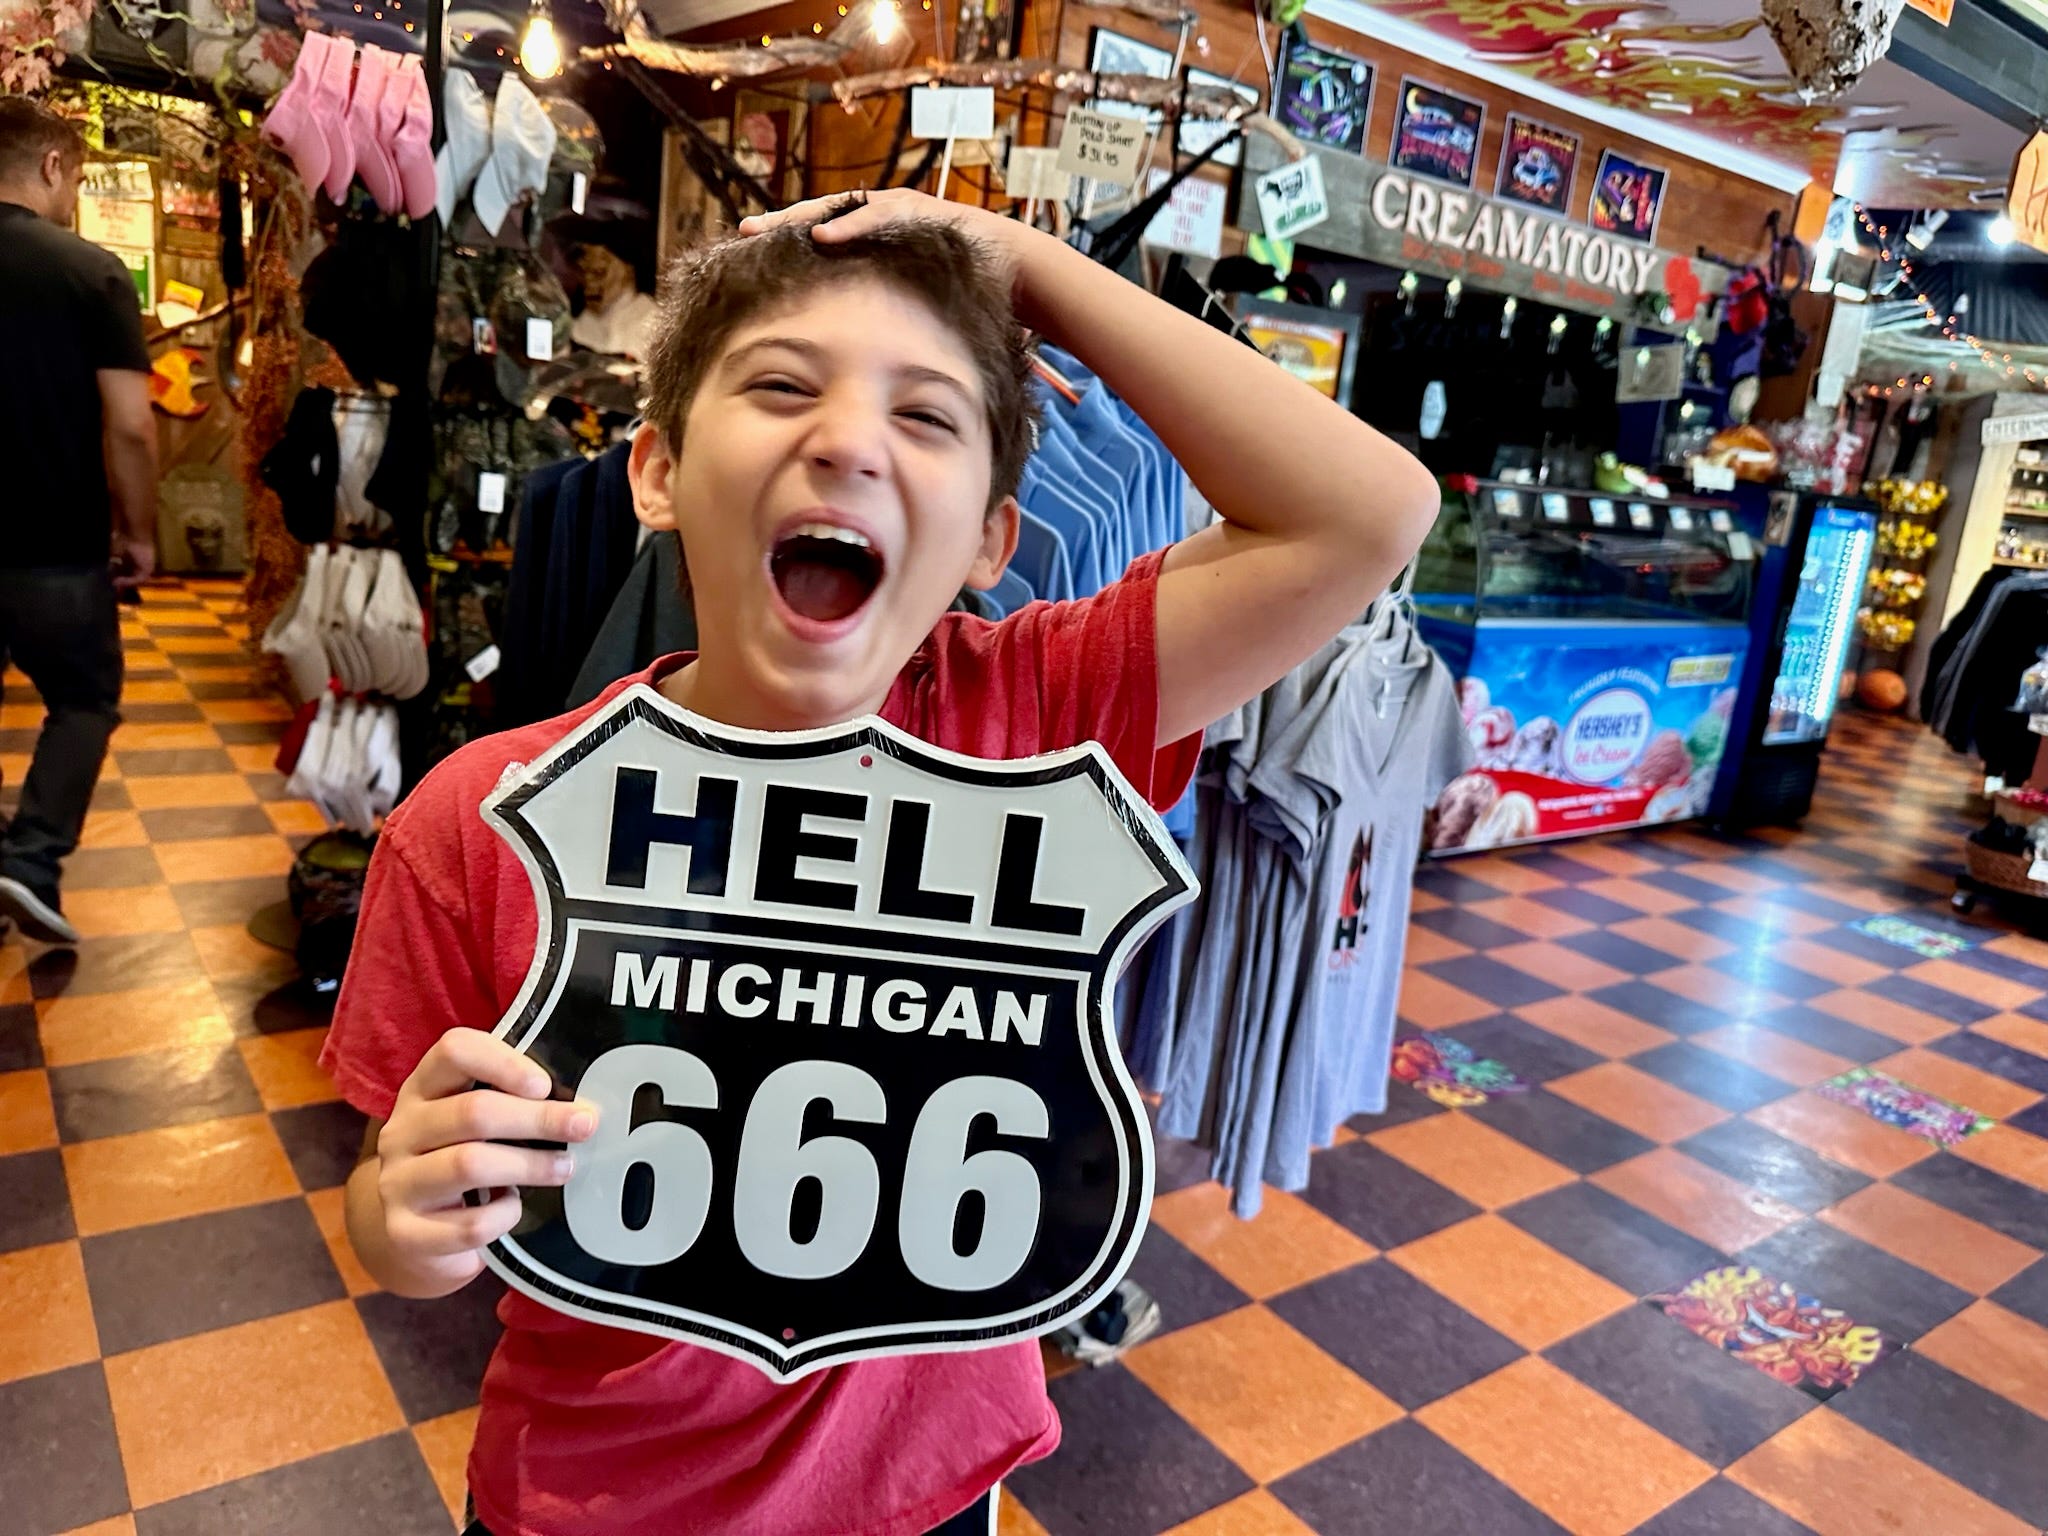 Der Sohn des Autors hält ein Straßenschild „Hell Michigan 666“ in der Hand und lacht in einem Souvenirladen 